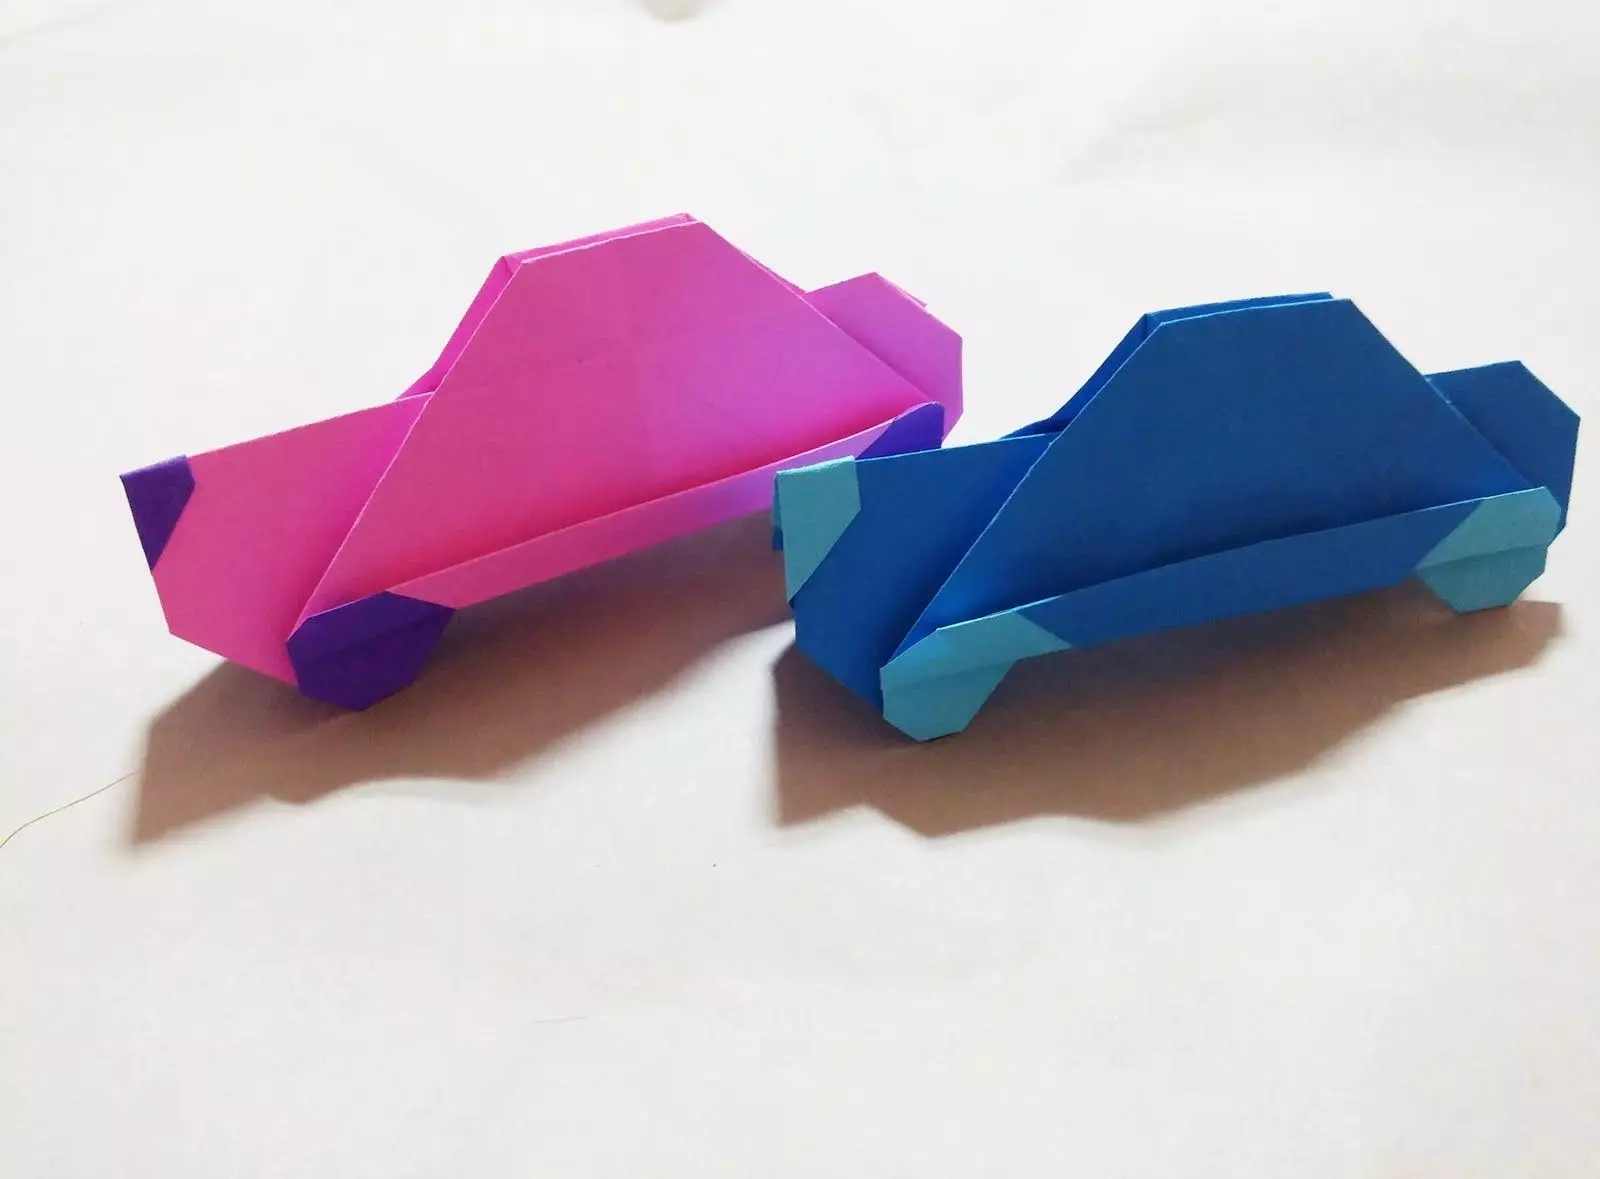 Origami daga takarda don yara shekaru 5-6: Shirye-shiryen mataki-mataki-mataki, masu suttura masu sauƙi tare da hannuwansu. Ta yaya za a yi aji mai dumi a cikin sabon salon Jagora? 26988_51